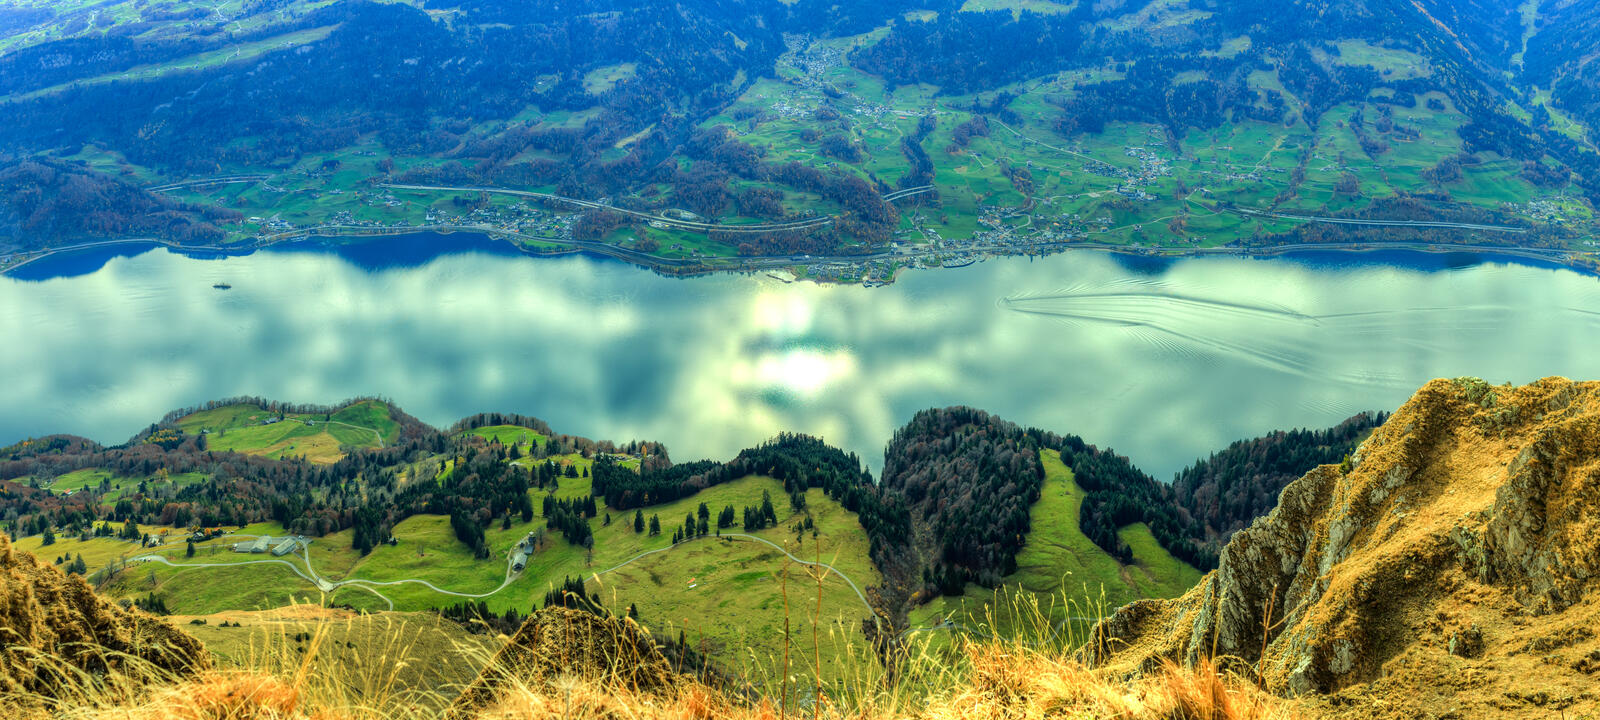 Обои Walensee озеро Швейцарские Альпы на рабочий стол